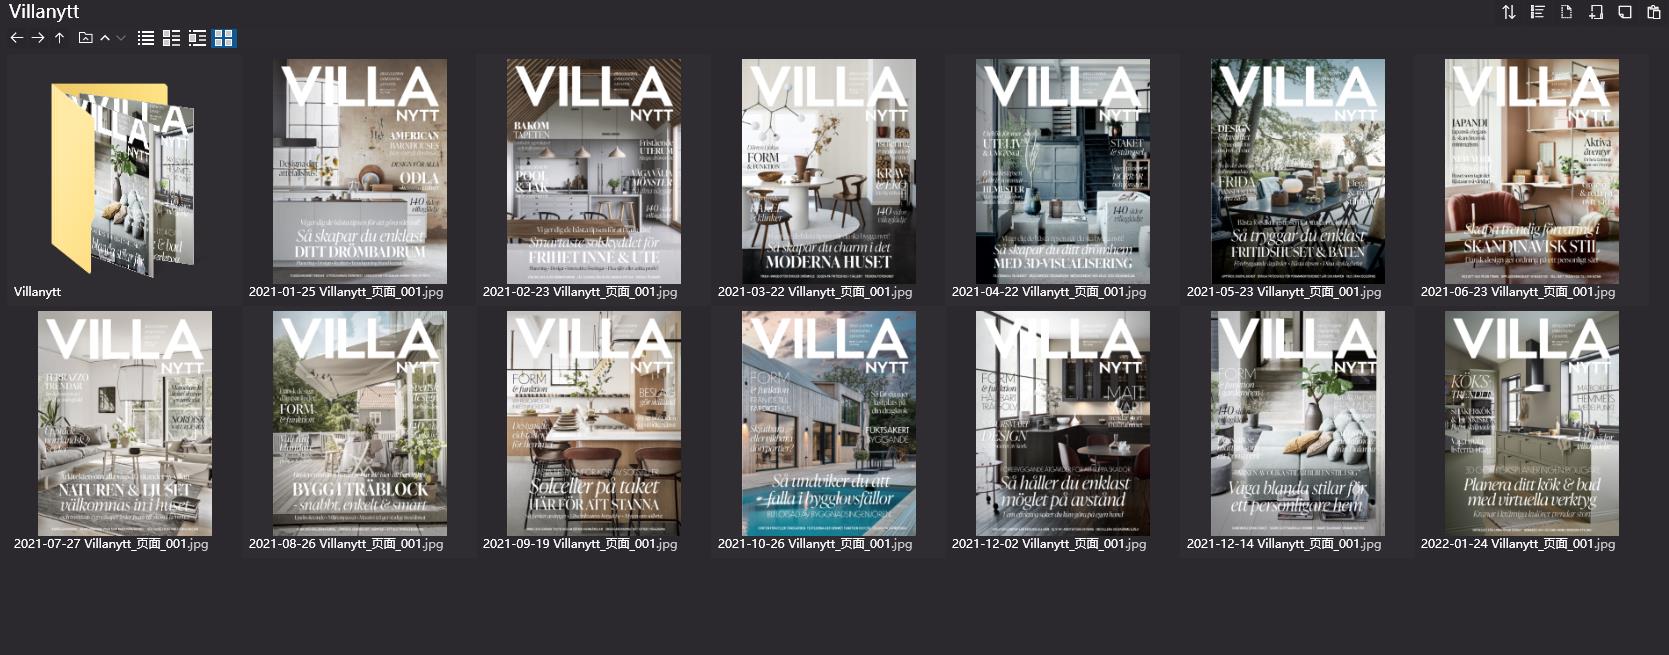 室內設計雜誌VILLA,別墅設計雜誌,室內設計電子雜誌,雜誌下載,VILLA雜誌合集